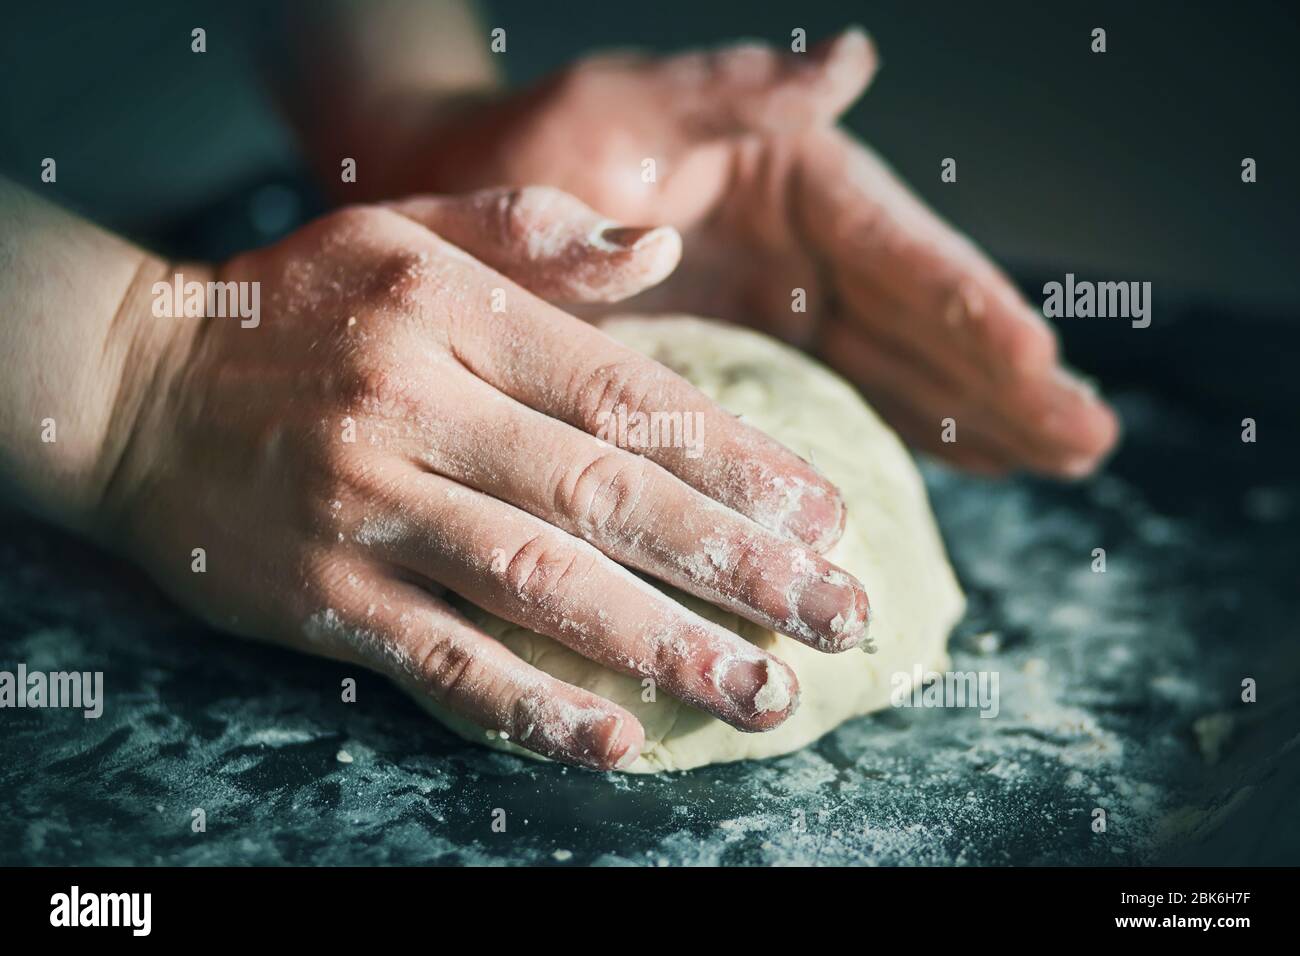 El cocinero amasa masa de pan con las manos fuertes en una bandeja oscura llena de harina desmenuzada blanca, iluminada por la luz. Foto de stock